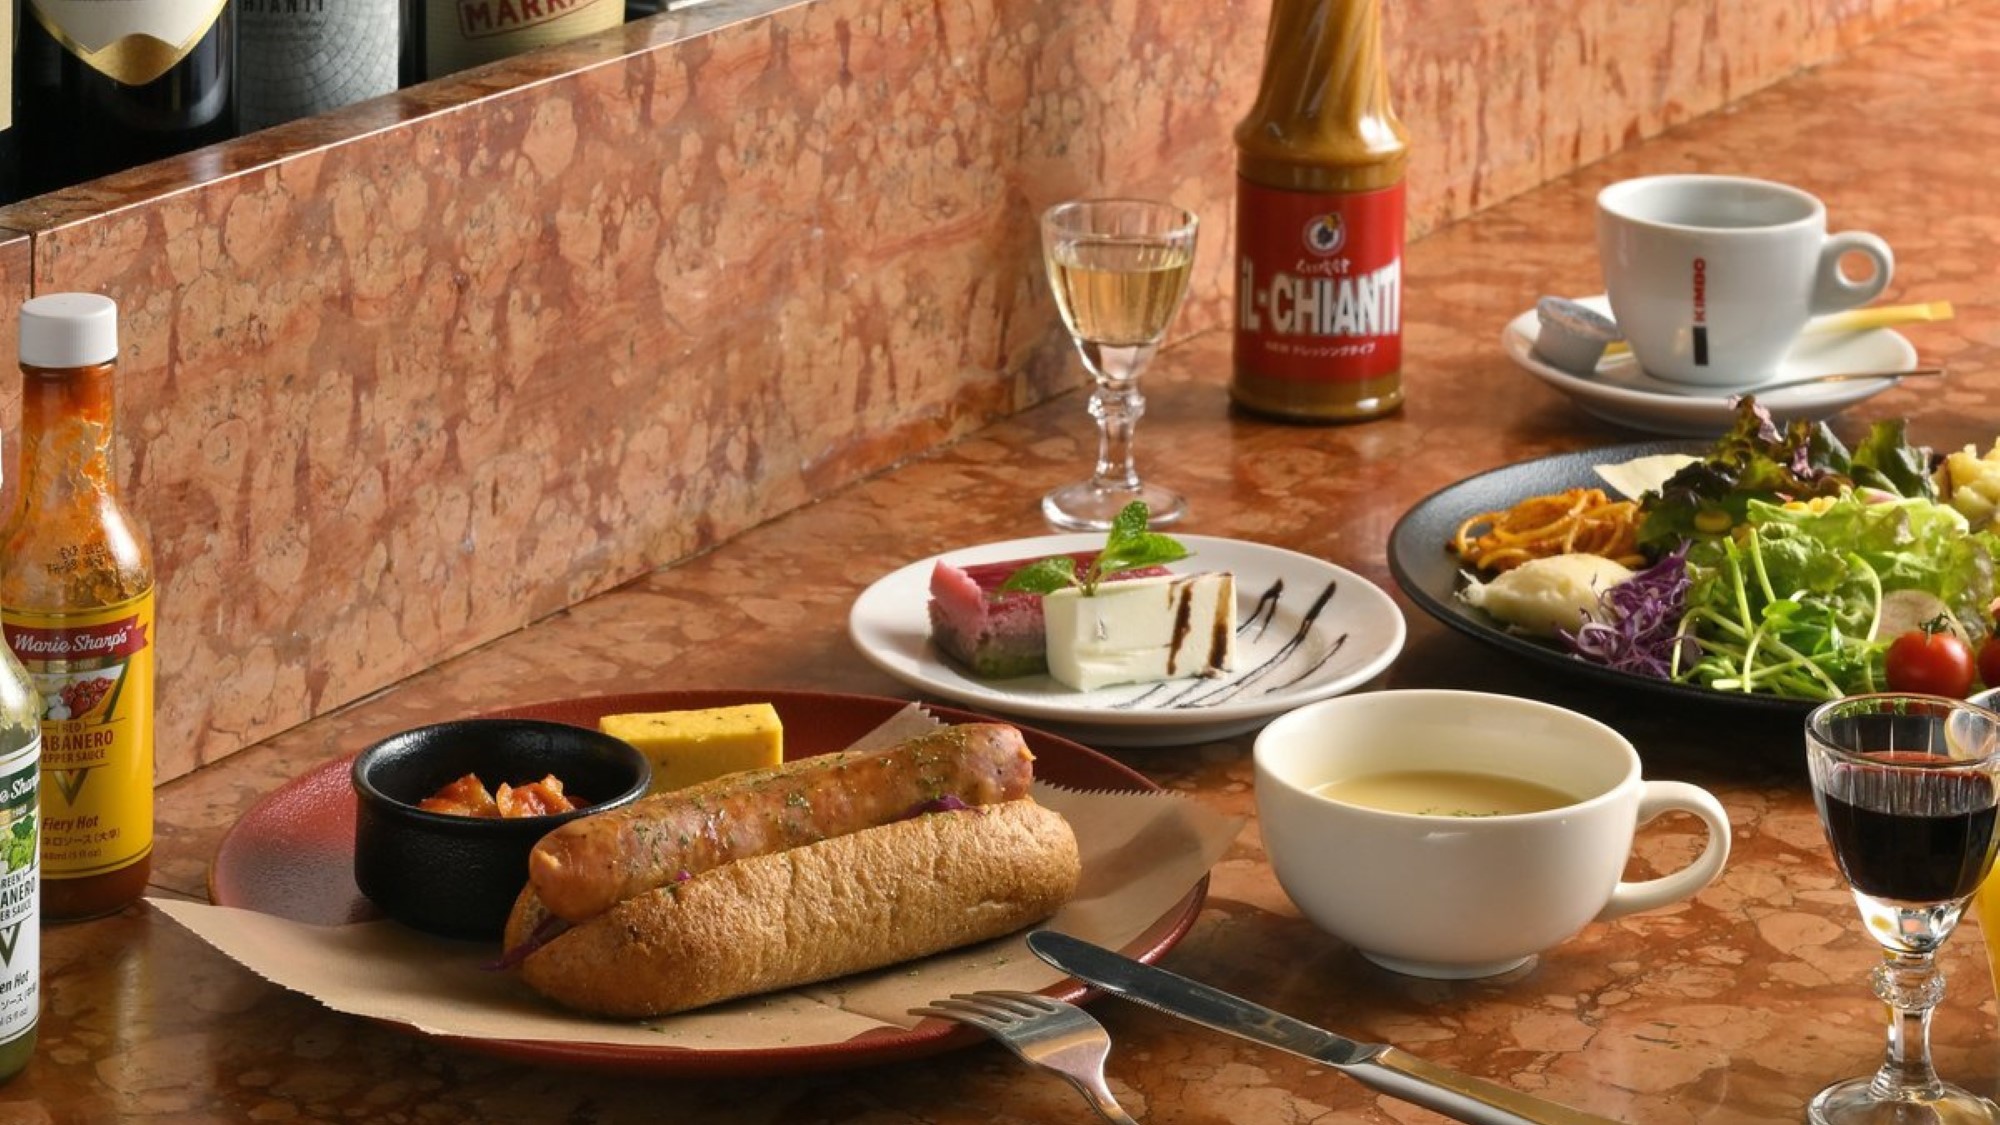 【Eatwell朝食】ドイツの粗挽きポークソーセージを使用した「スモークブルストの桐生酵母ドッグ」